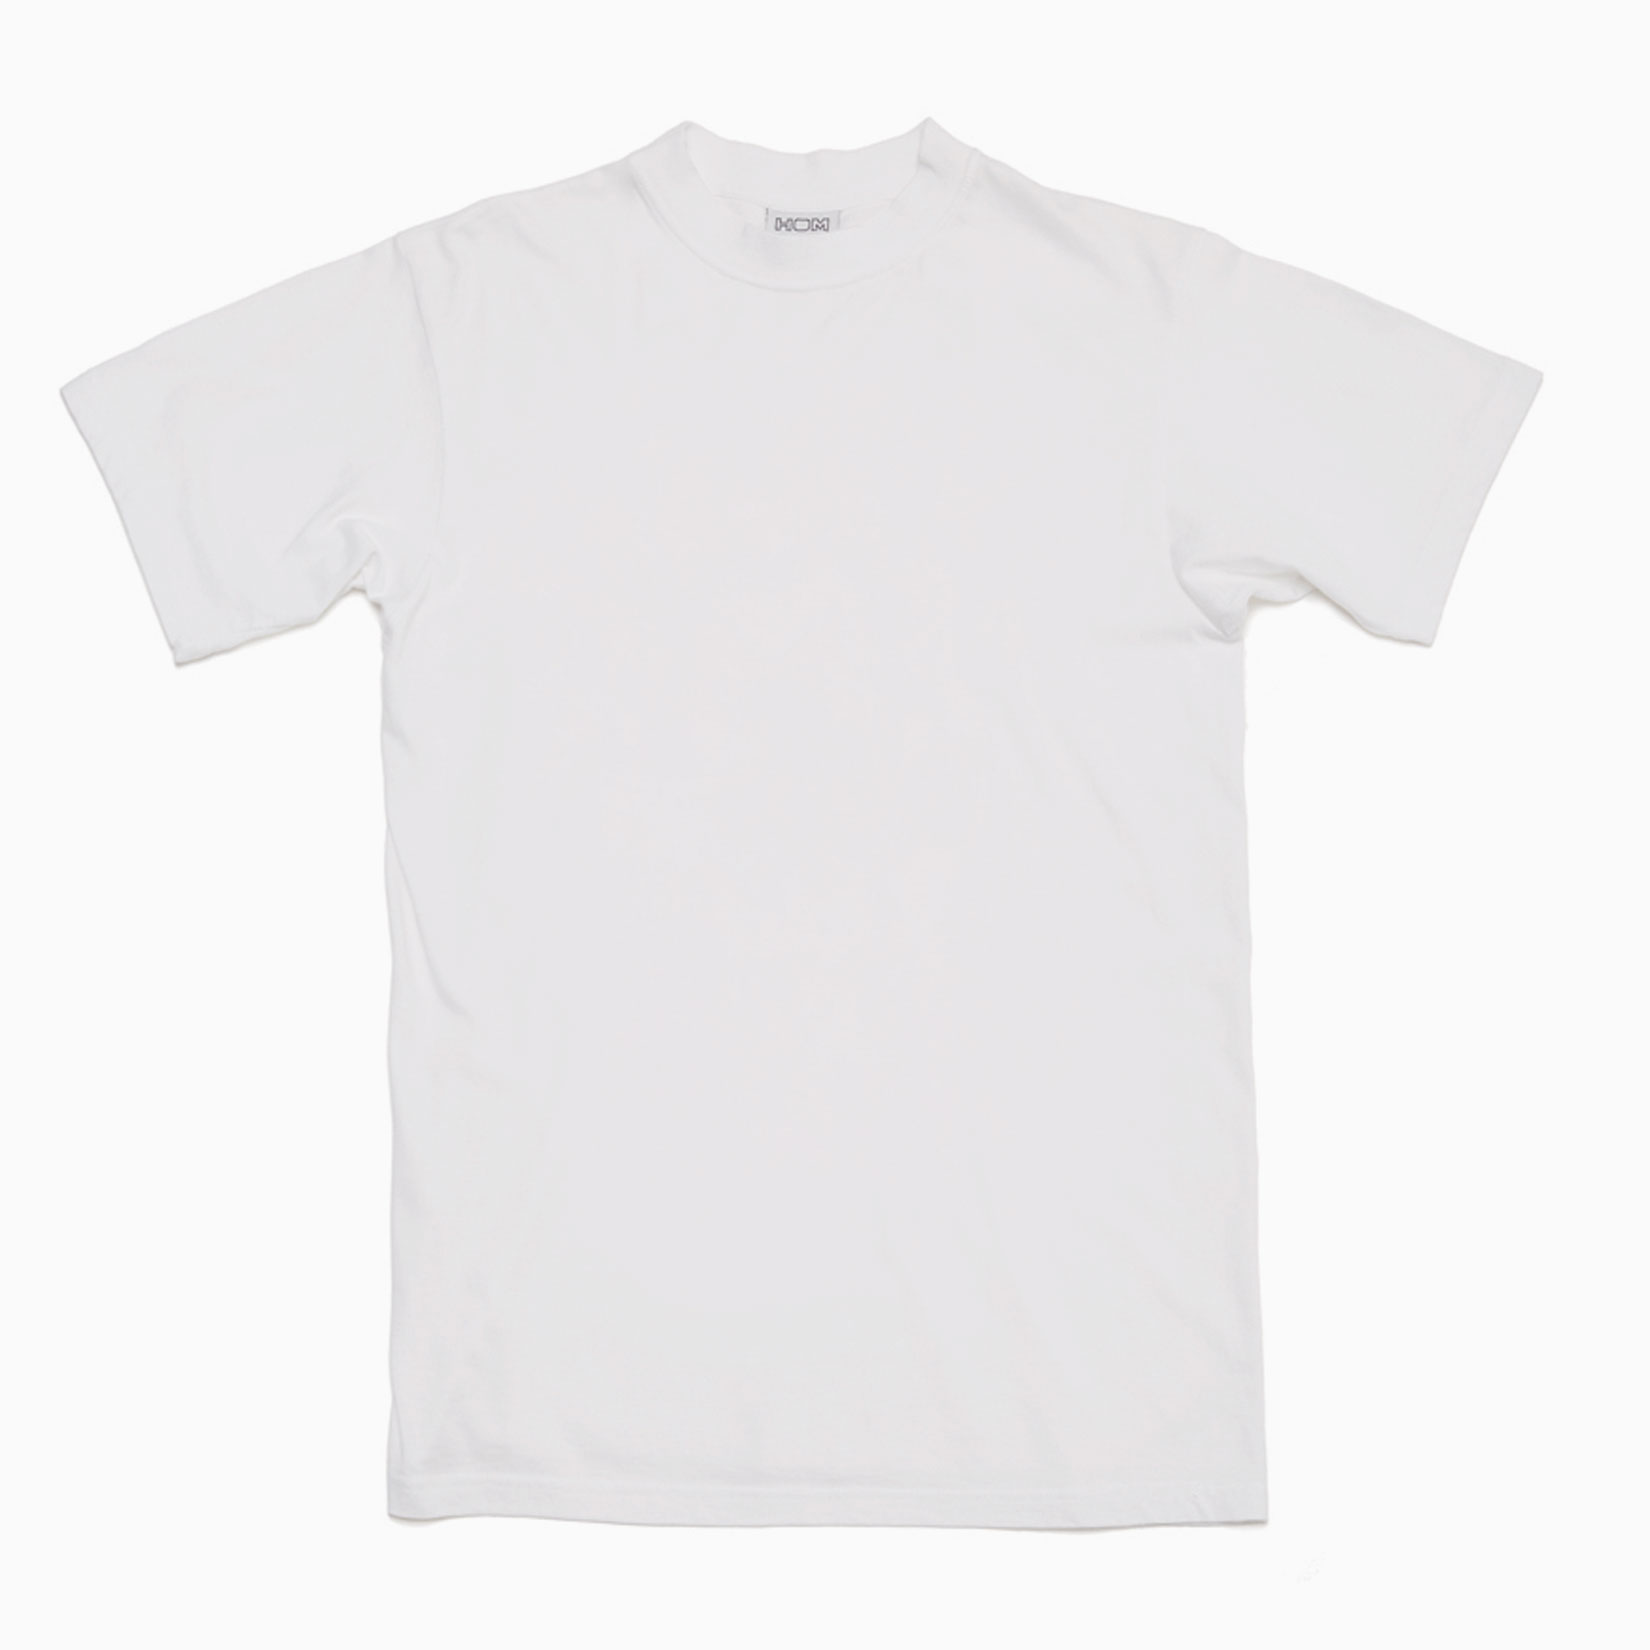 Hom- T-Shirt  U Ausschnitt Weiss